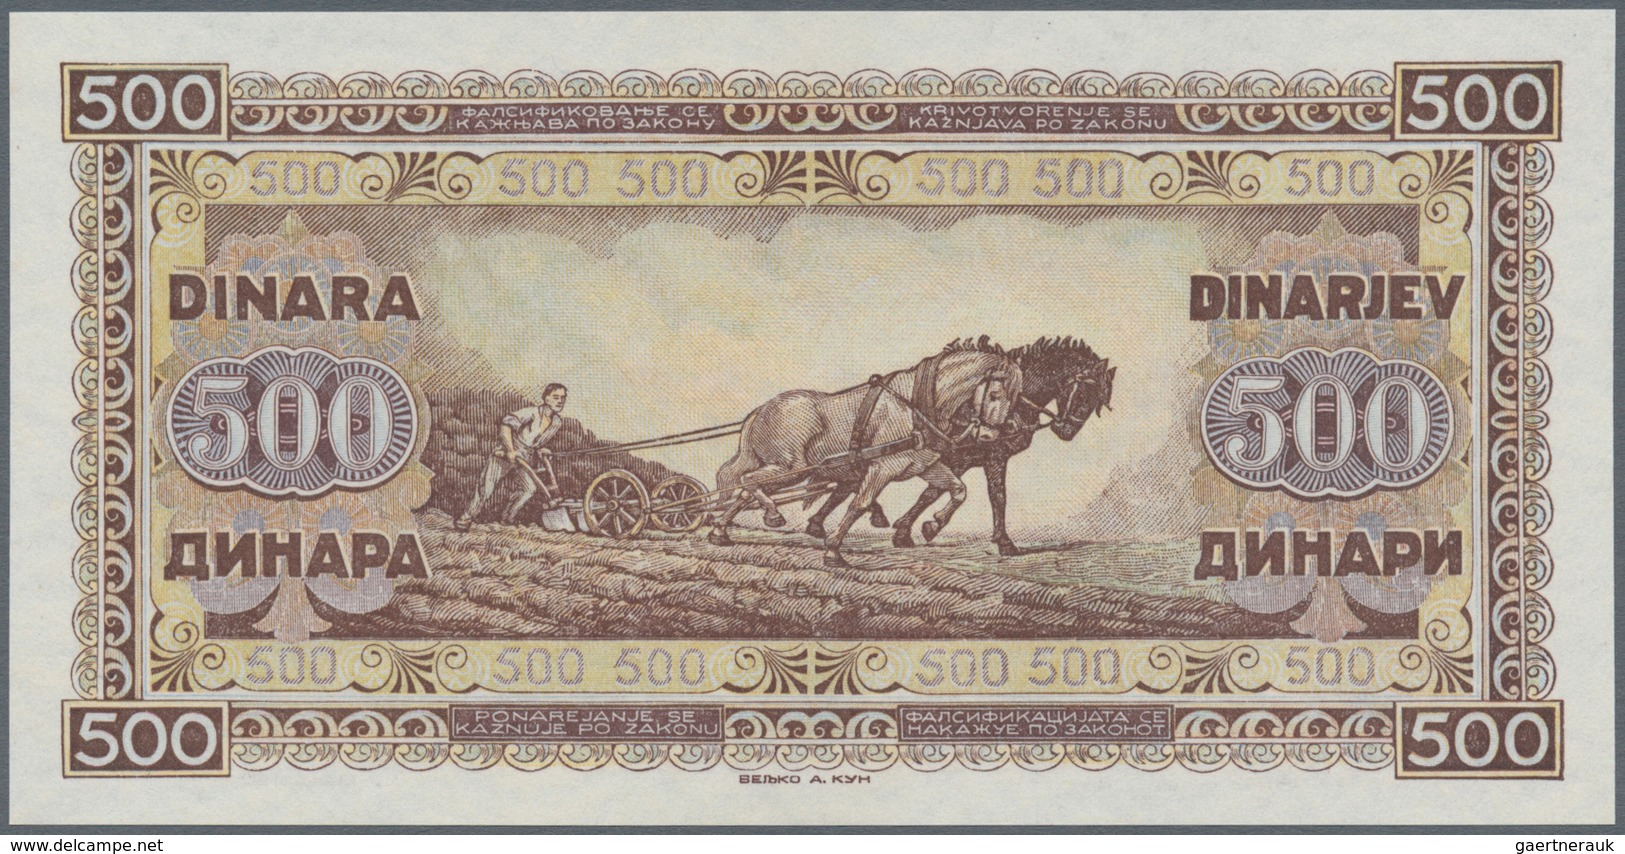 02627 Yugoslavia / Jugoslavien: 500 Dinars 1946 P. 66 In Crisp Original Condition: UNC. - Yugoslavia